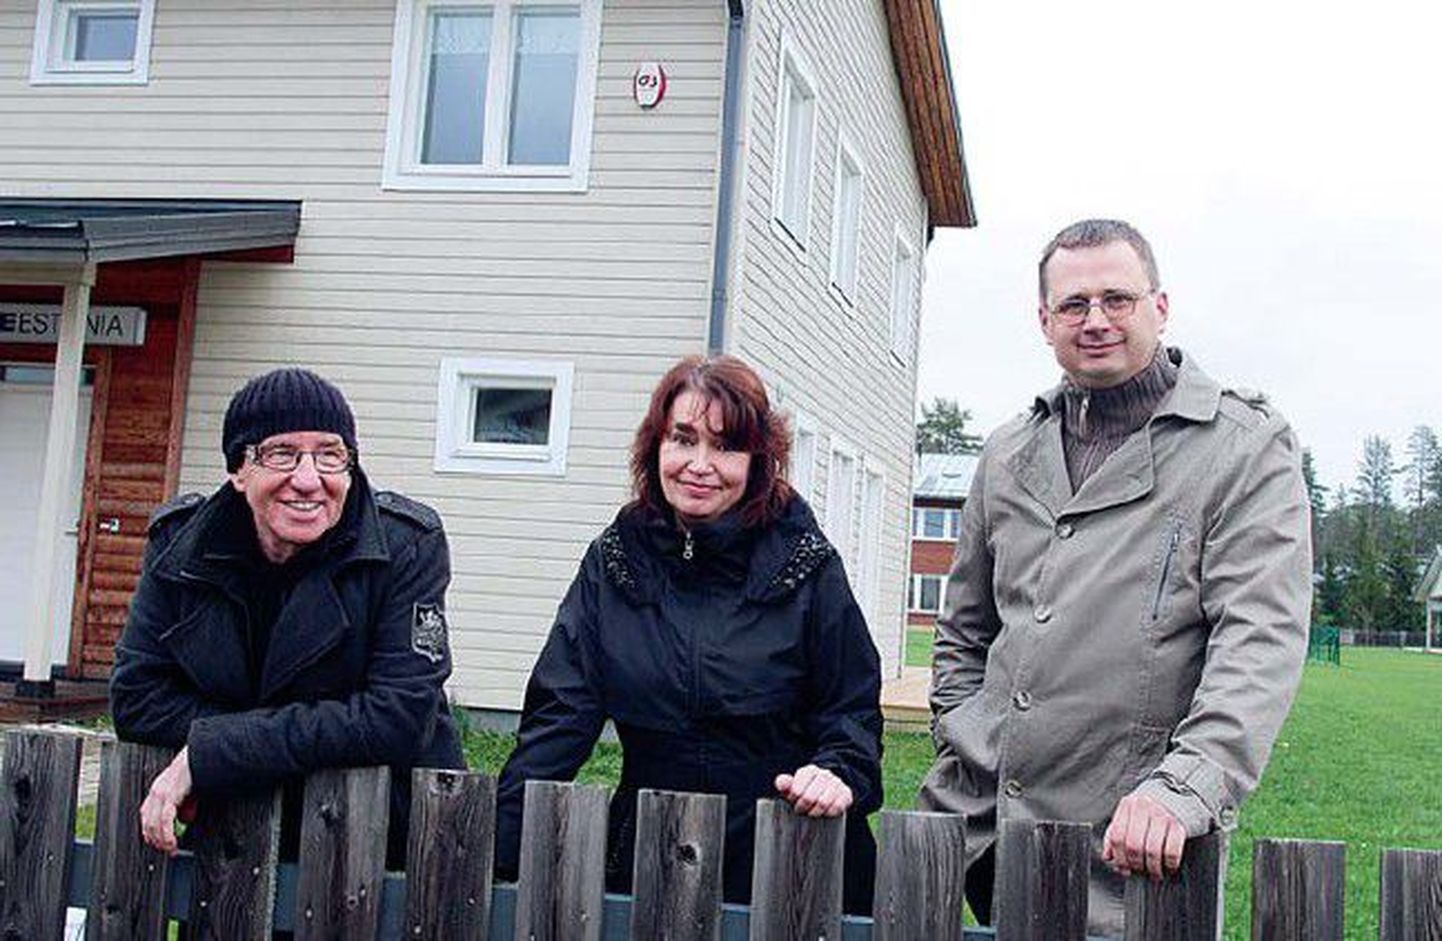 Üleaedseid Uuesalus teatakse-tuntakse, kinnitab külavanem Jaan Urvet (vasakul). Külaelanikud Ülle Kullör ja Tiit Kärgets nõustuvad.